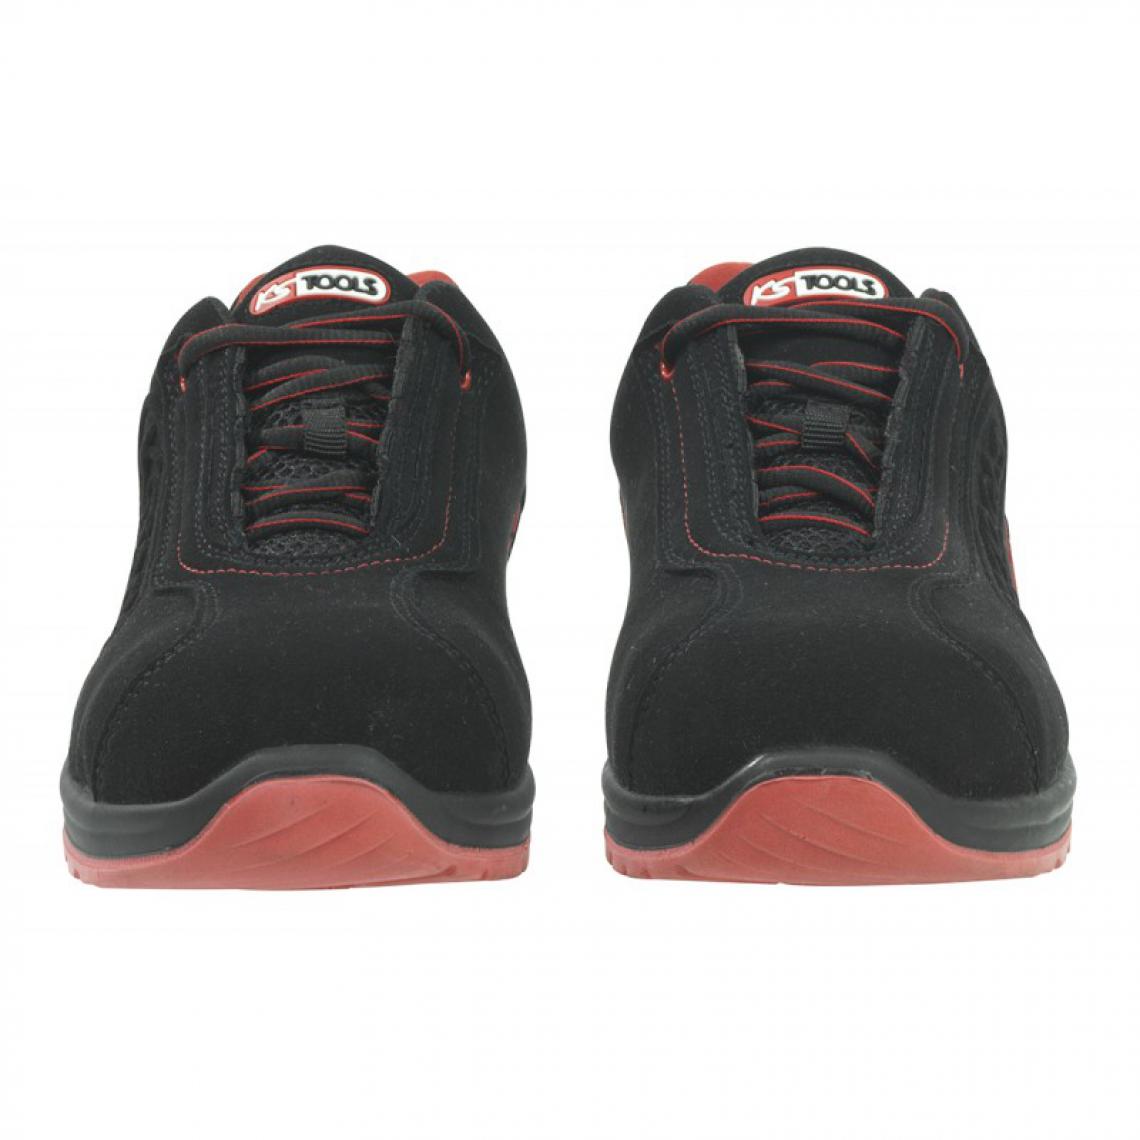 Kstools - Chaussures de sécurité KSTOOLS Couleur noire rouge taille 40 - Equipement de Protection Individuelle